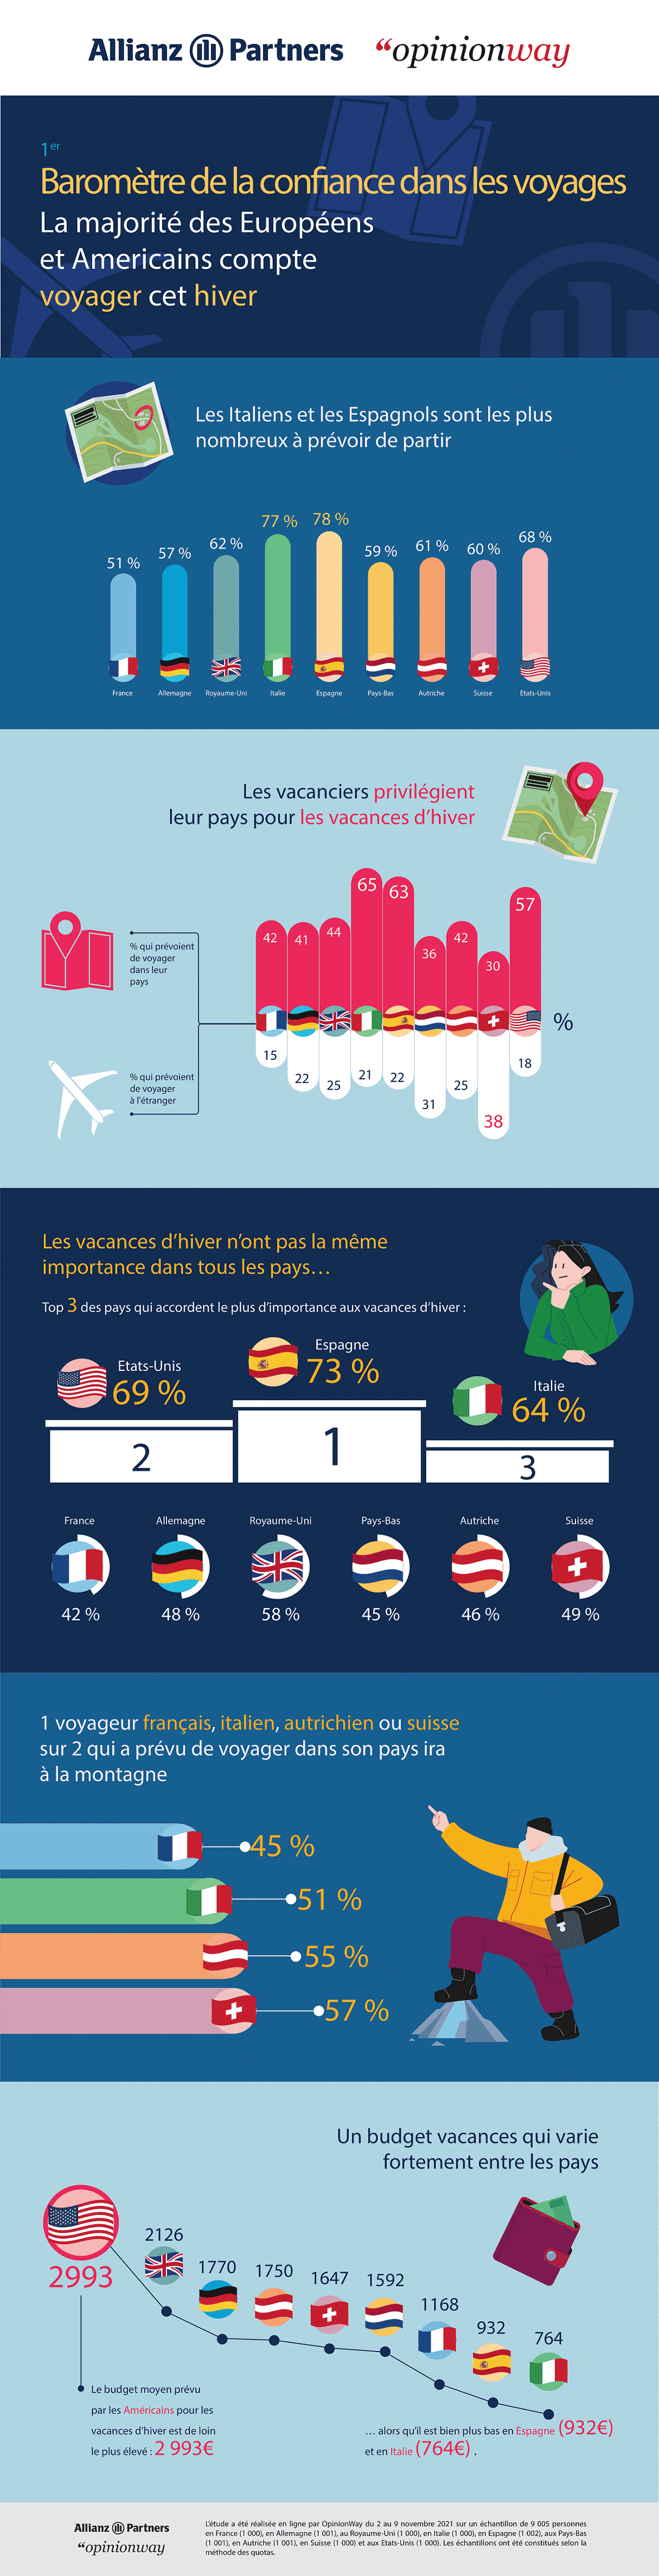 Infographie du Baromètre de confiance dans les voyages en hiver, par AllianzPartners et OpinionWay